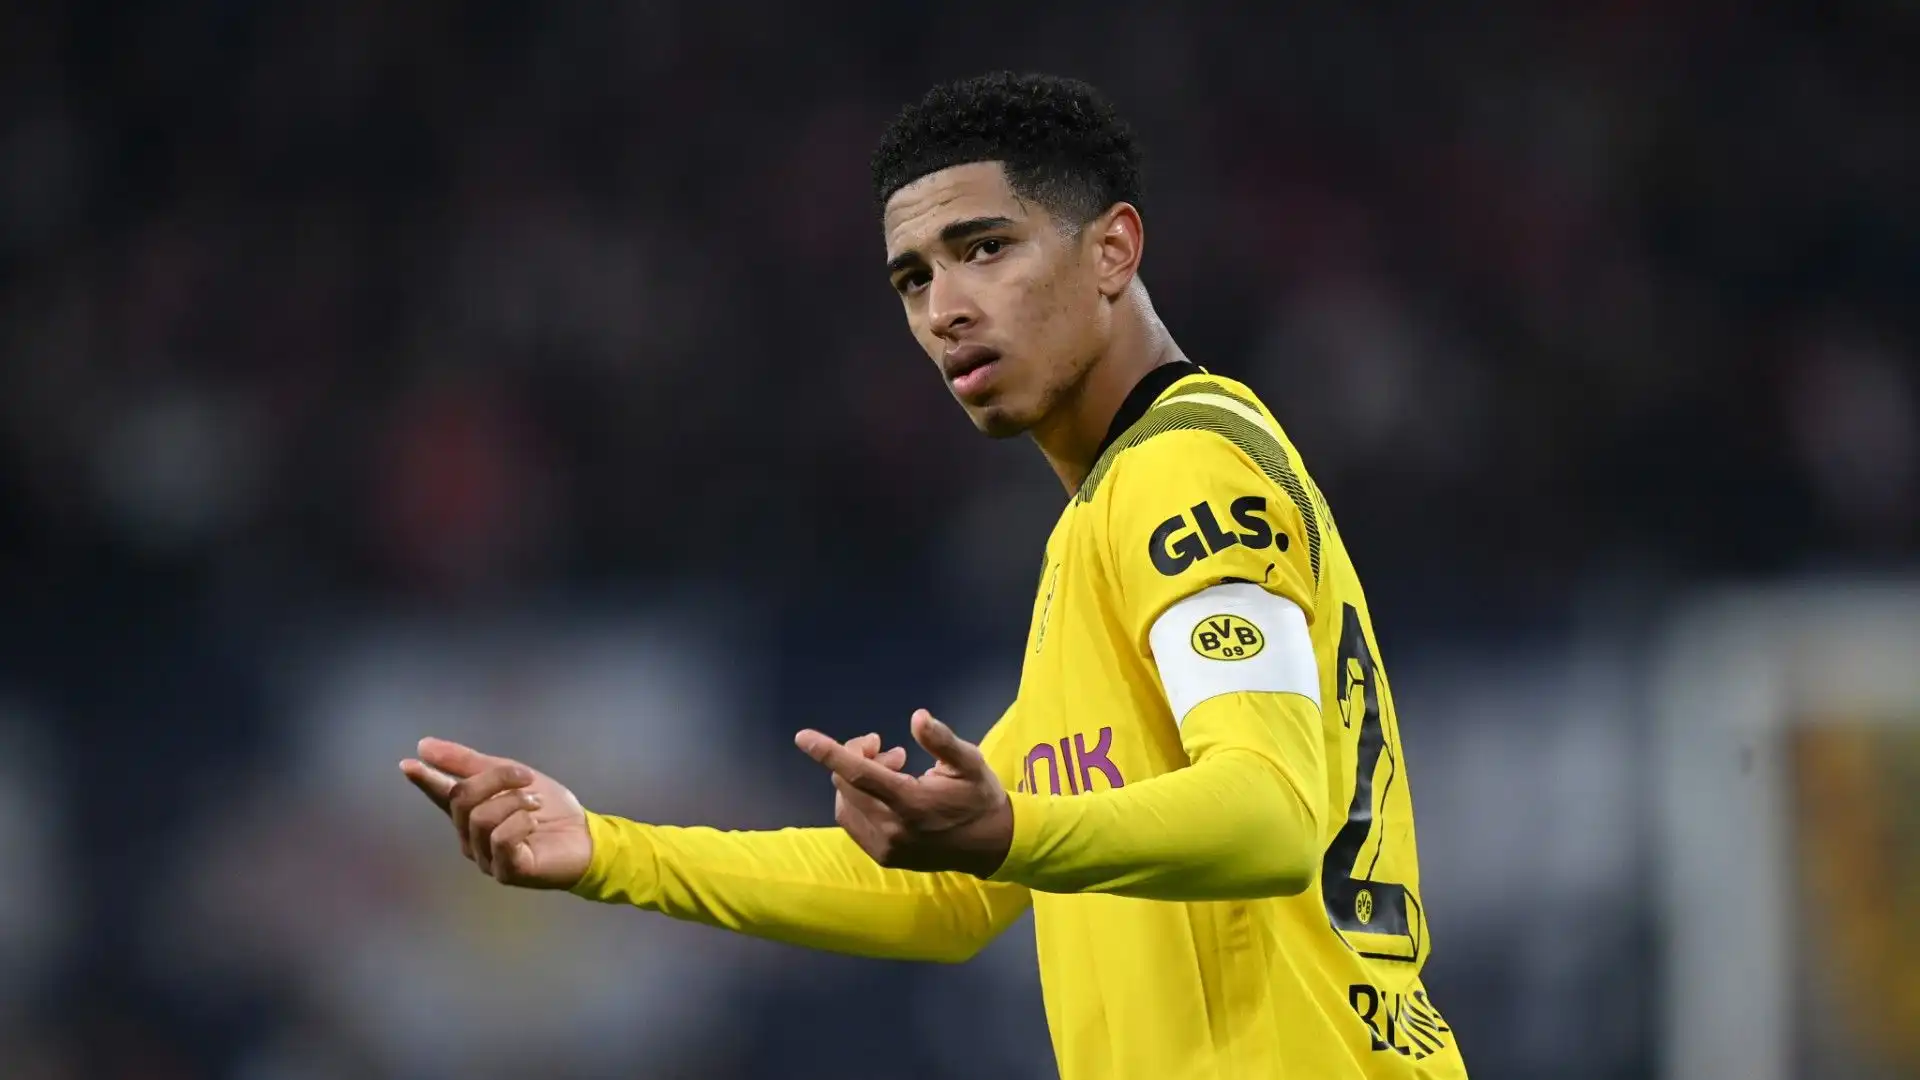 Inizia la fase decisiva del campionato e il Dortmund potrebbe esser costretto a rinunciare al suo calciatore più importante